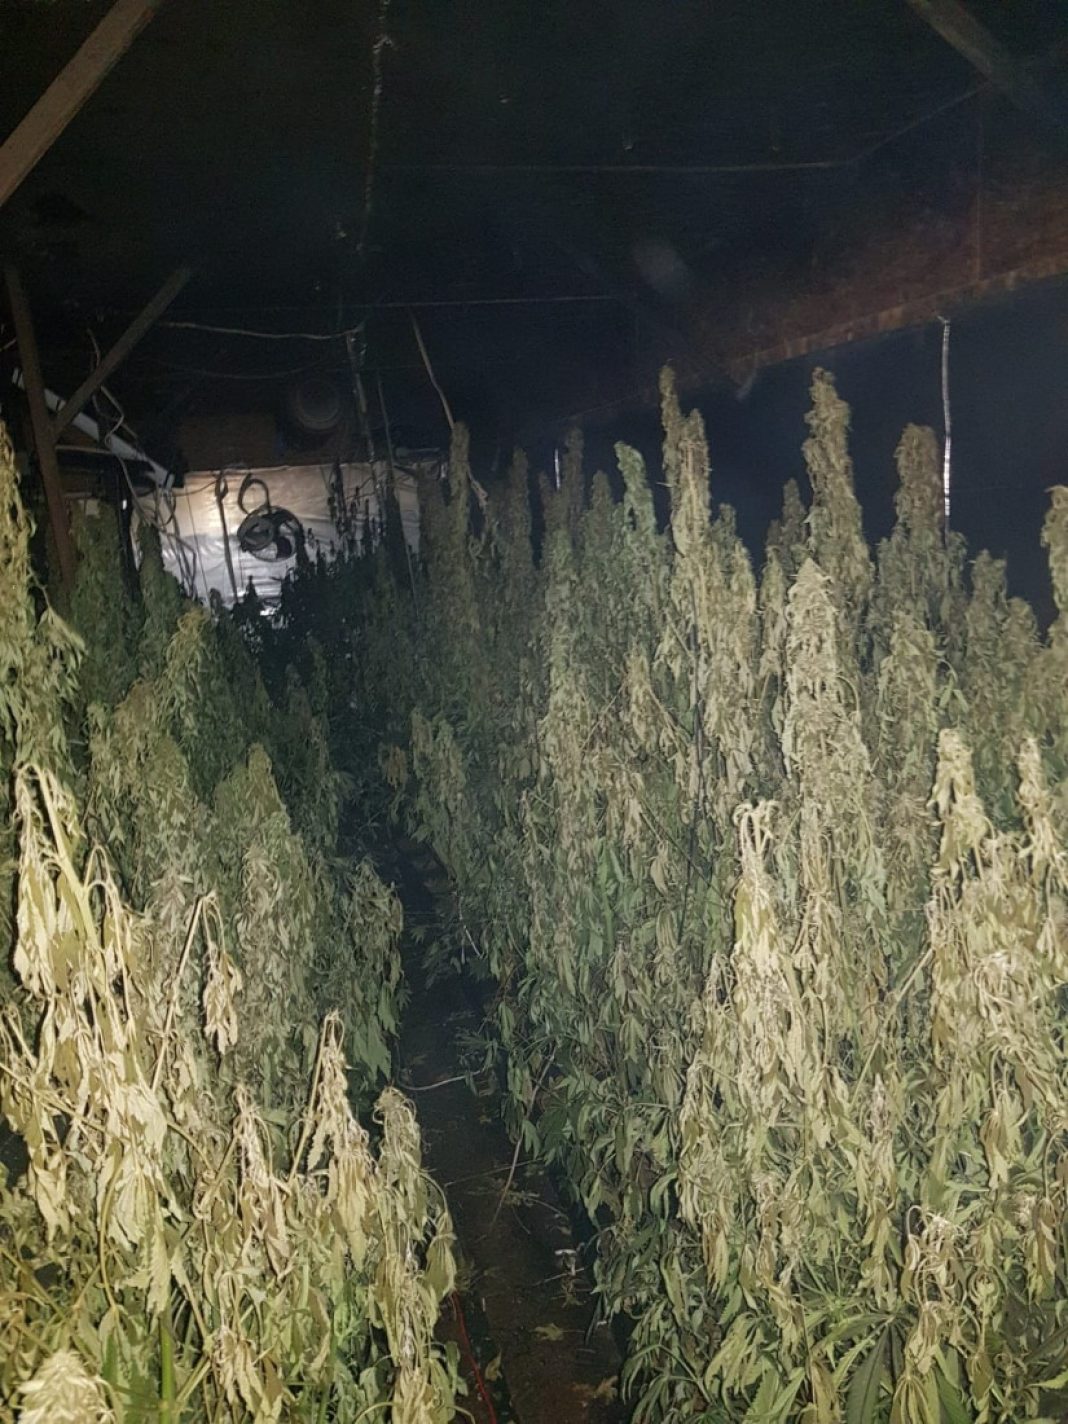 503 krzewy konopi indyjskich oraz 126 gramów zioła odkryli w jednym z domów letniskowych policjanci z Gdańska i Pucka. Mundurowi otrzymali informacje o profesjonalnej plantacji marihuany na terenie prywatnej posesji.